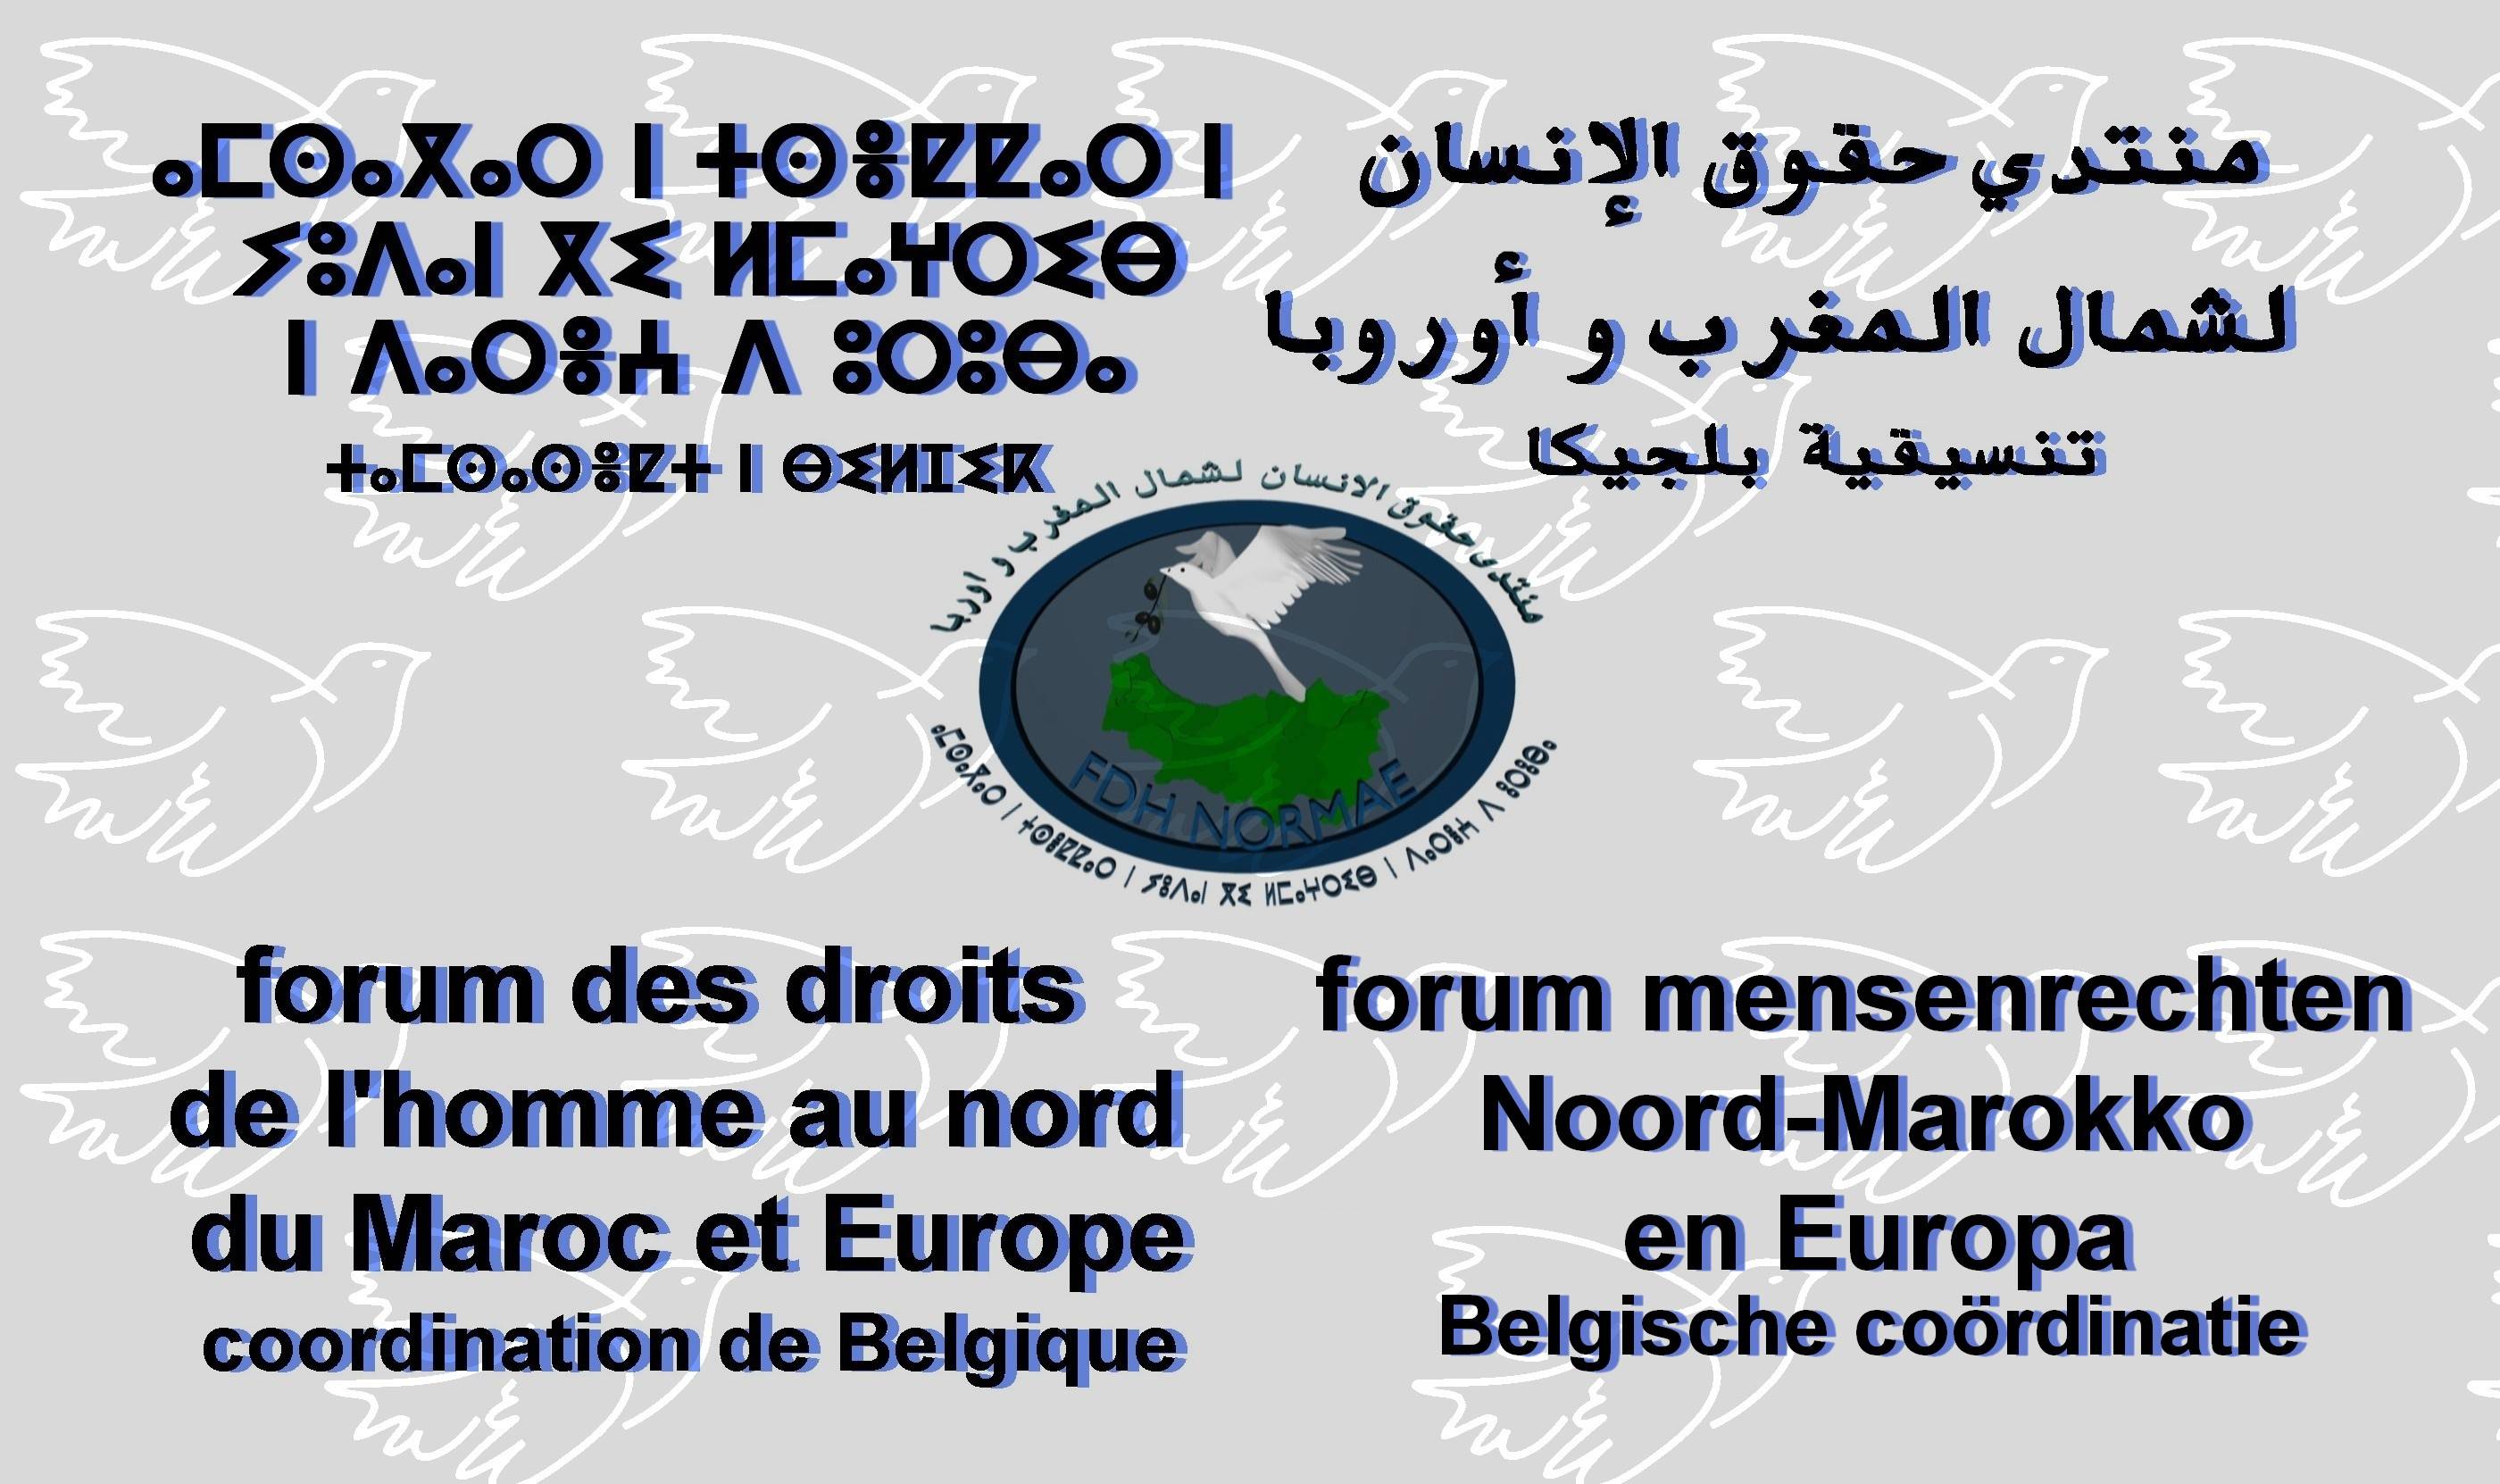 تنسيقية بلجيكا لمنتدى حقوق الإنسان لشمال المغرب وأوروبا تندد بأحداث لييج